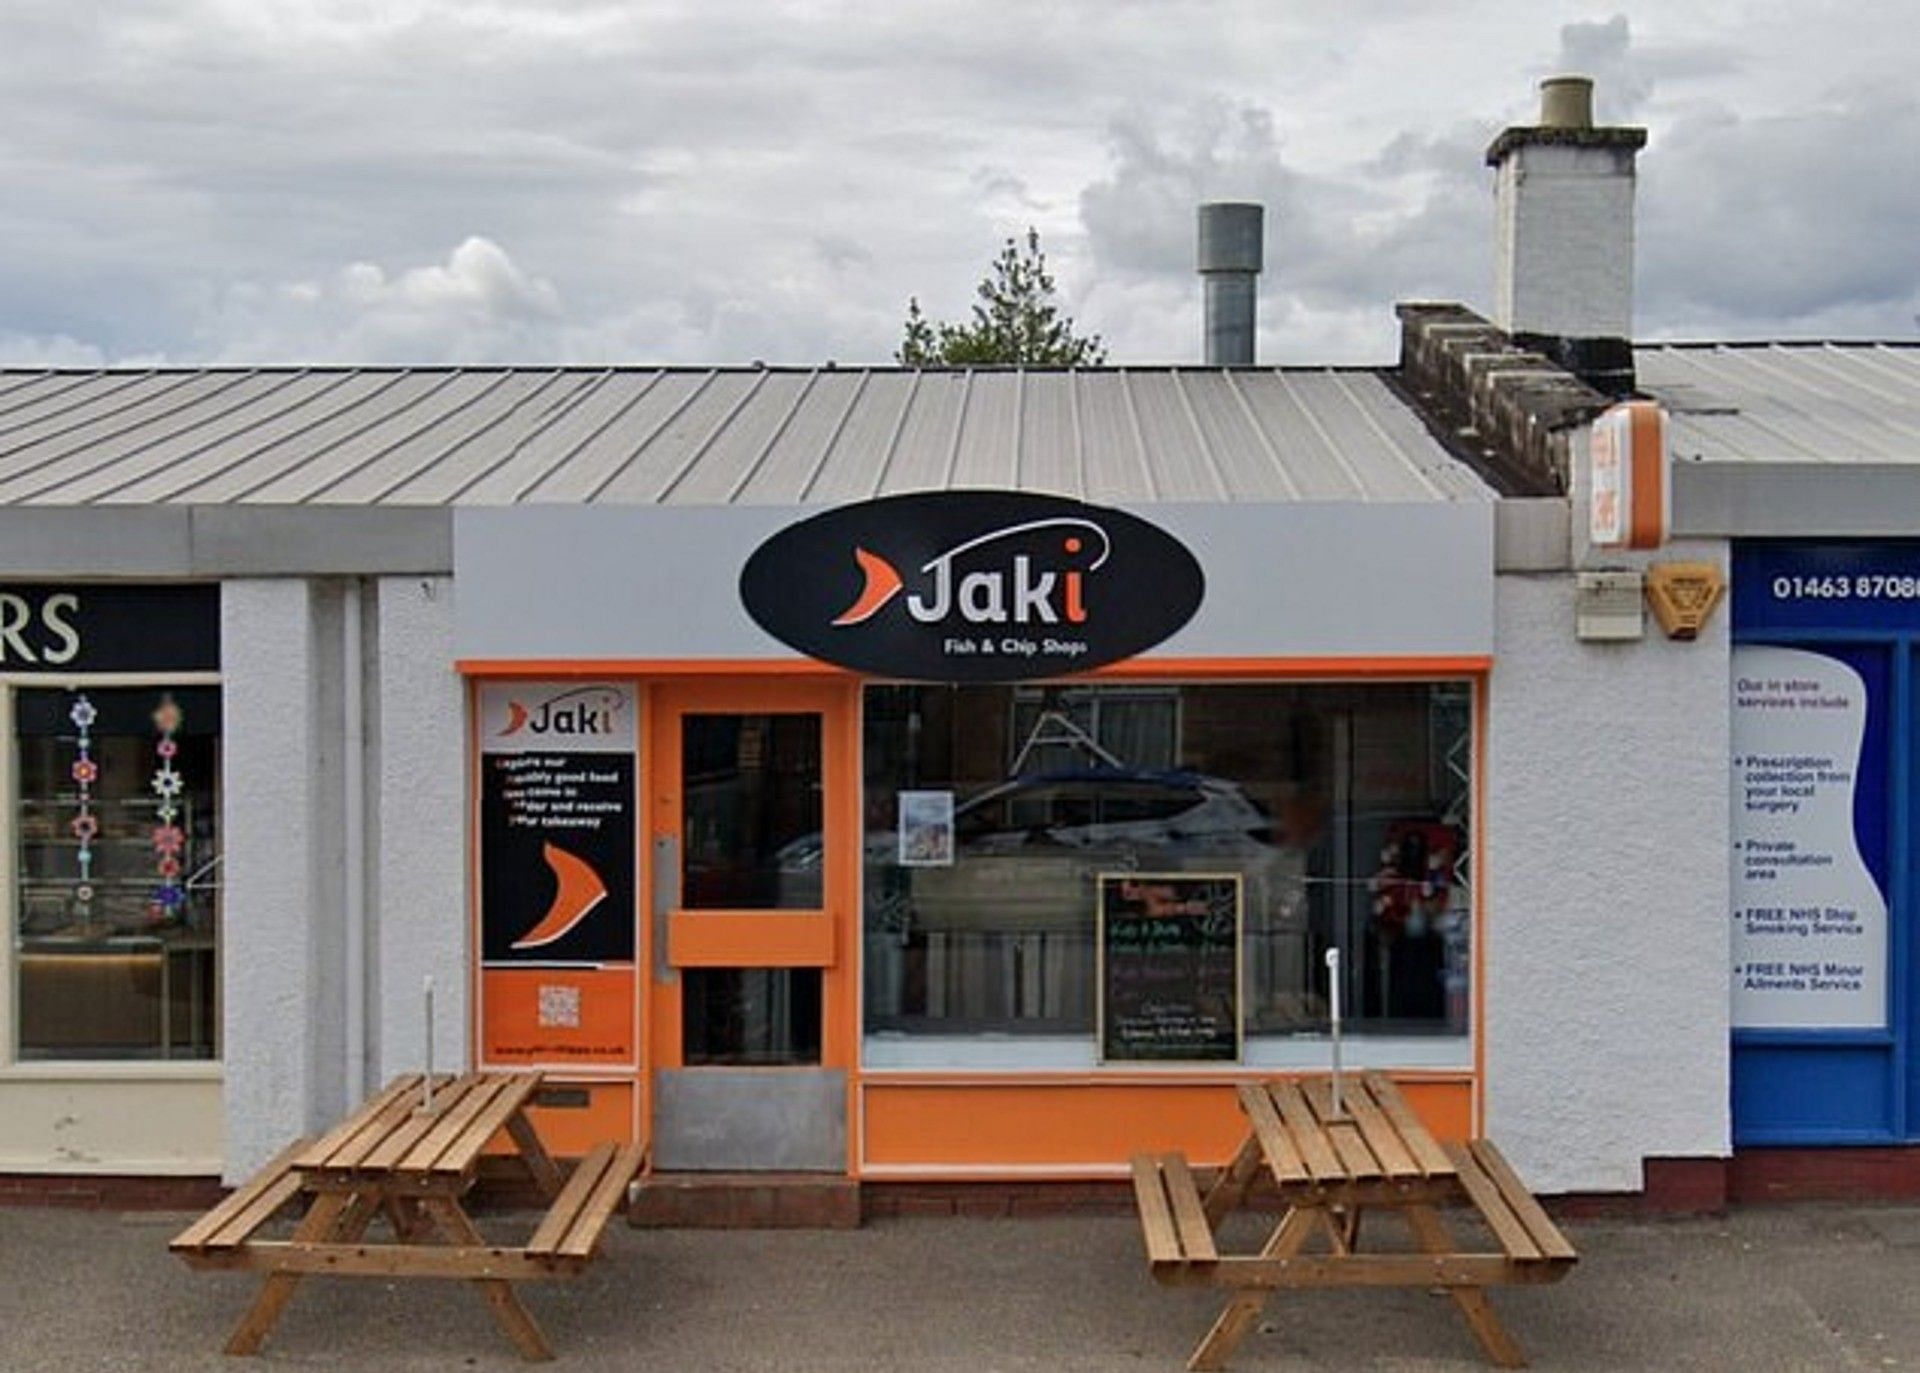 Jaki Fish and Chips owner slammed on social media (Image via Google Images)